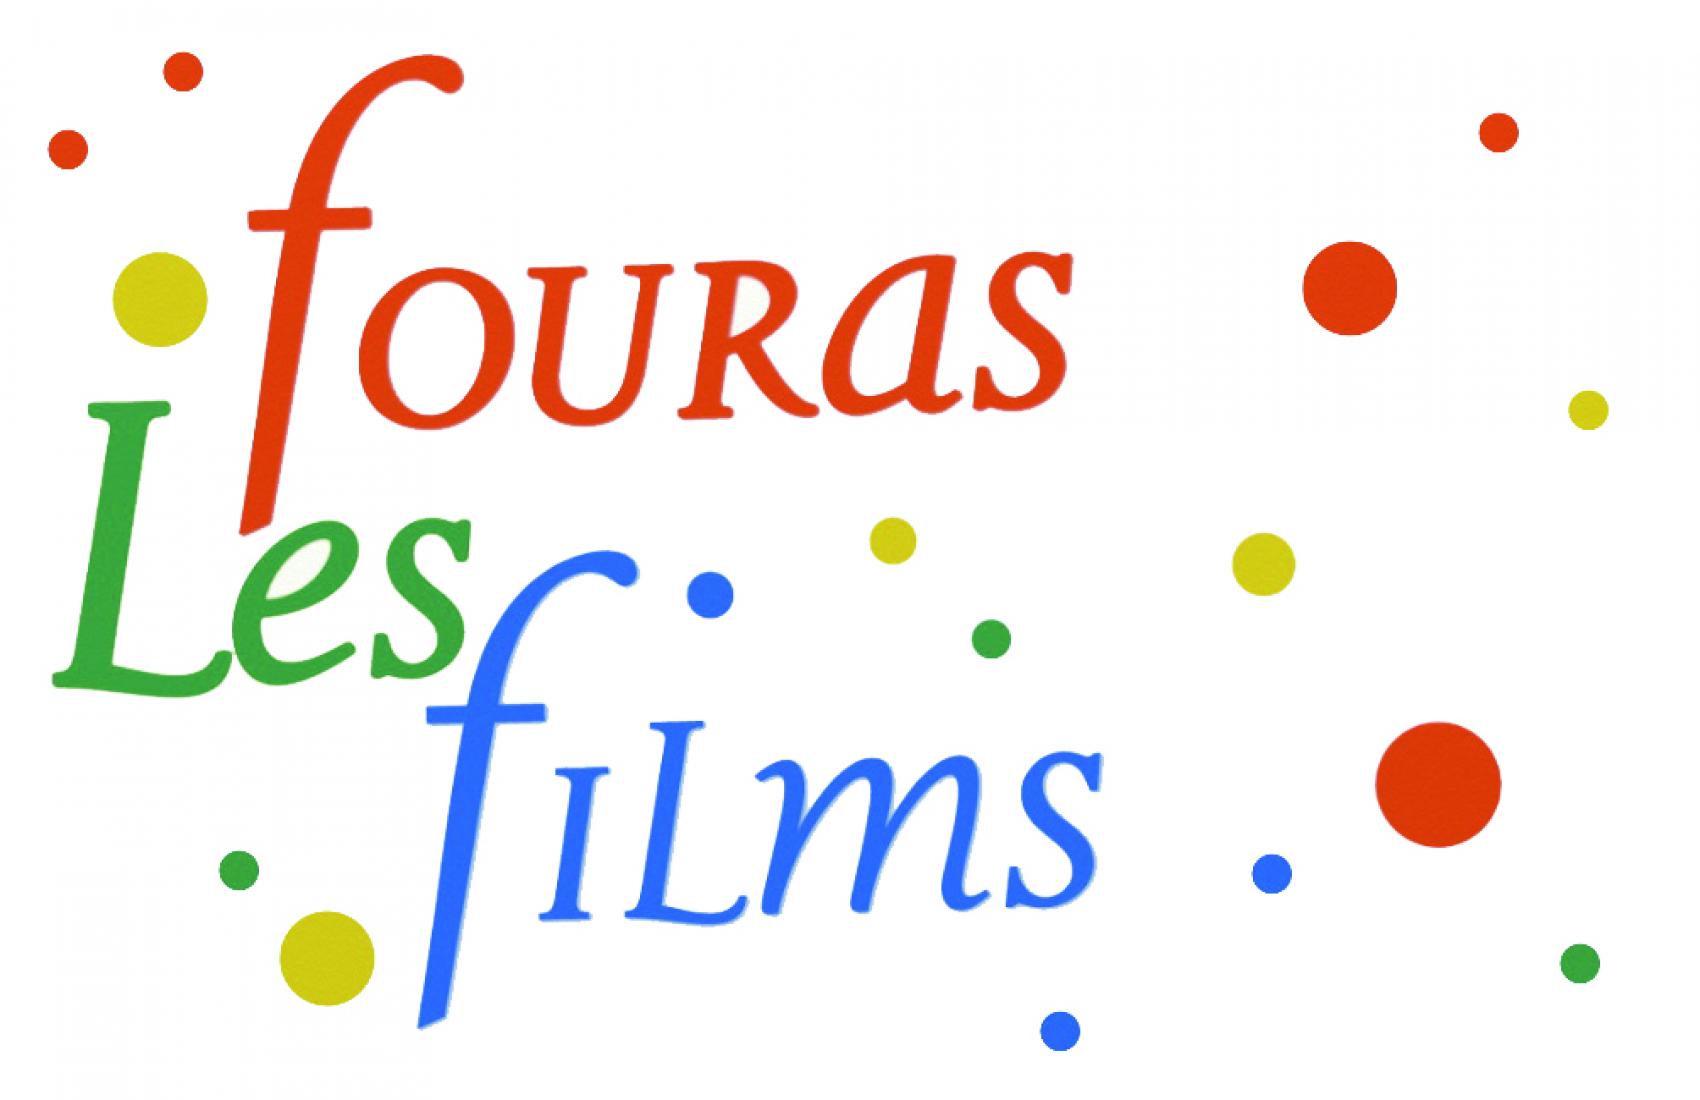 FOURAS LES FILMS